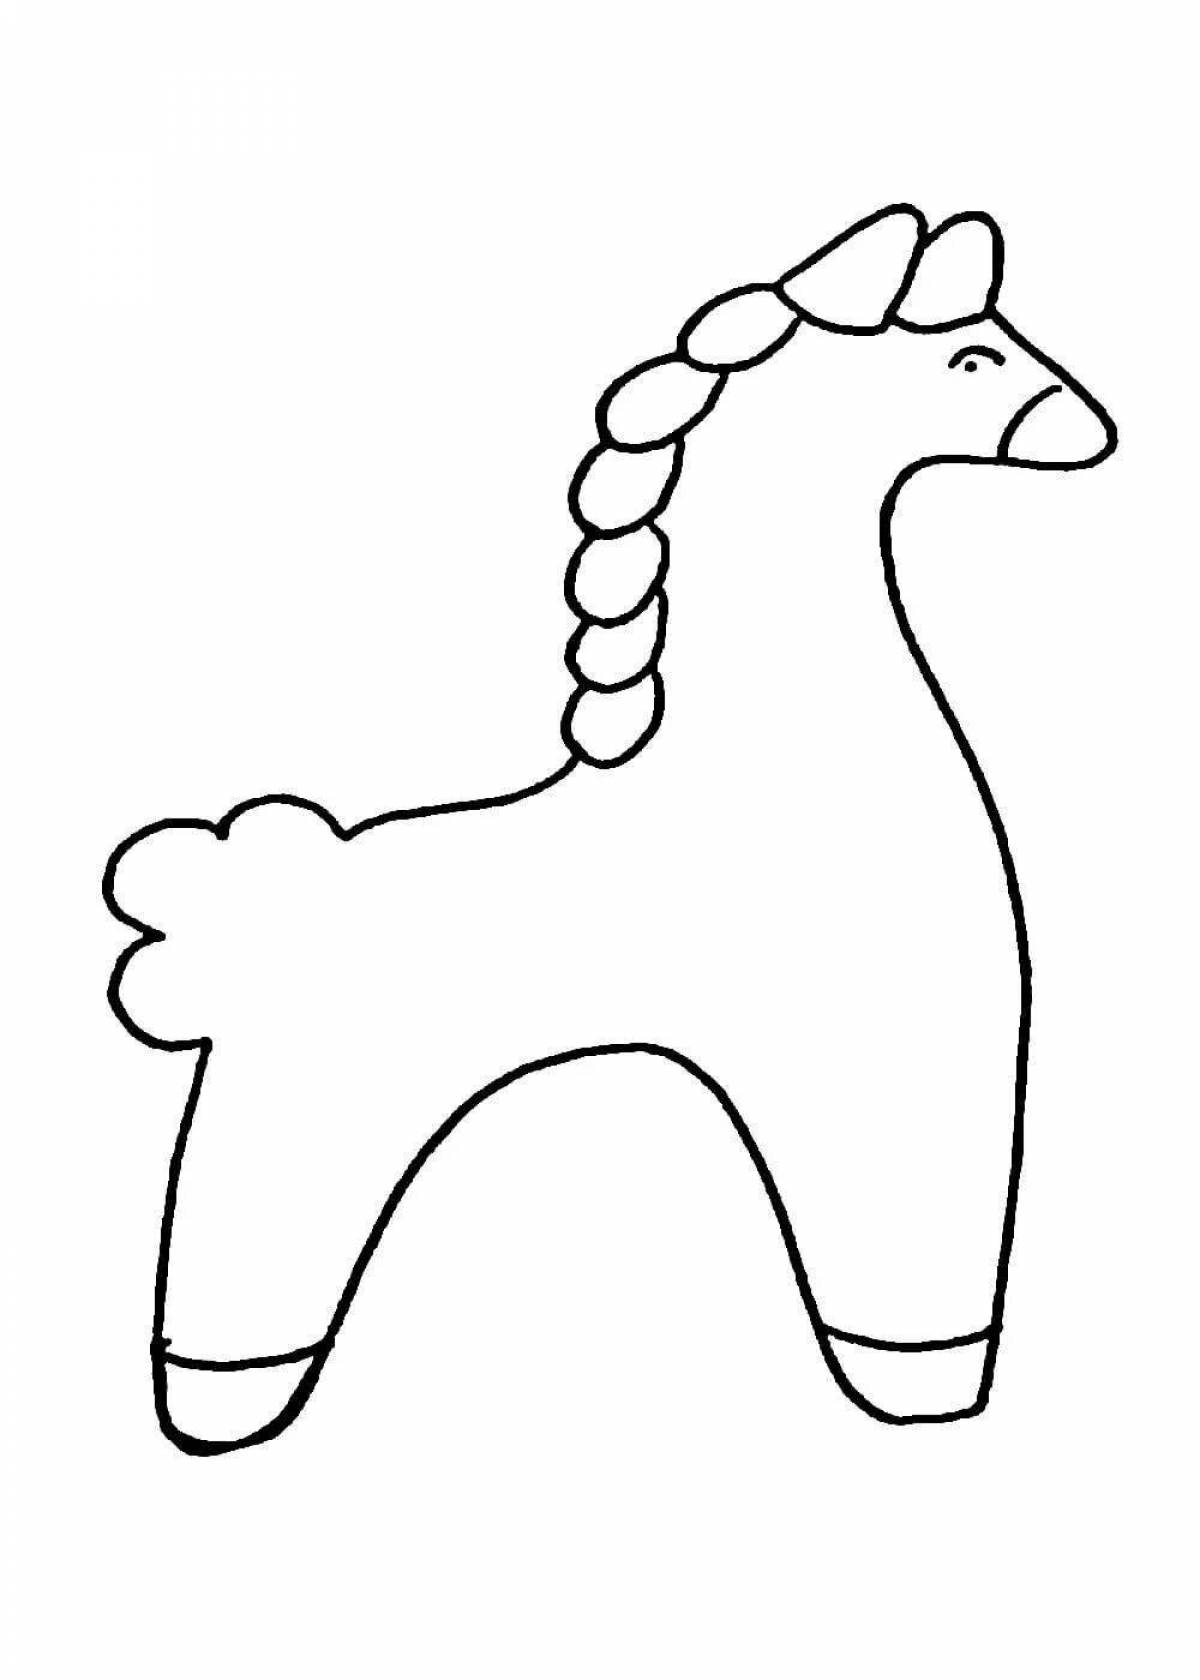 Фото Праздничная раскраска лошадка дымковская игрушка